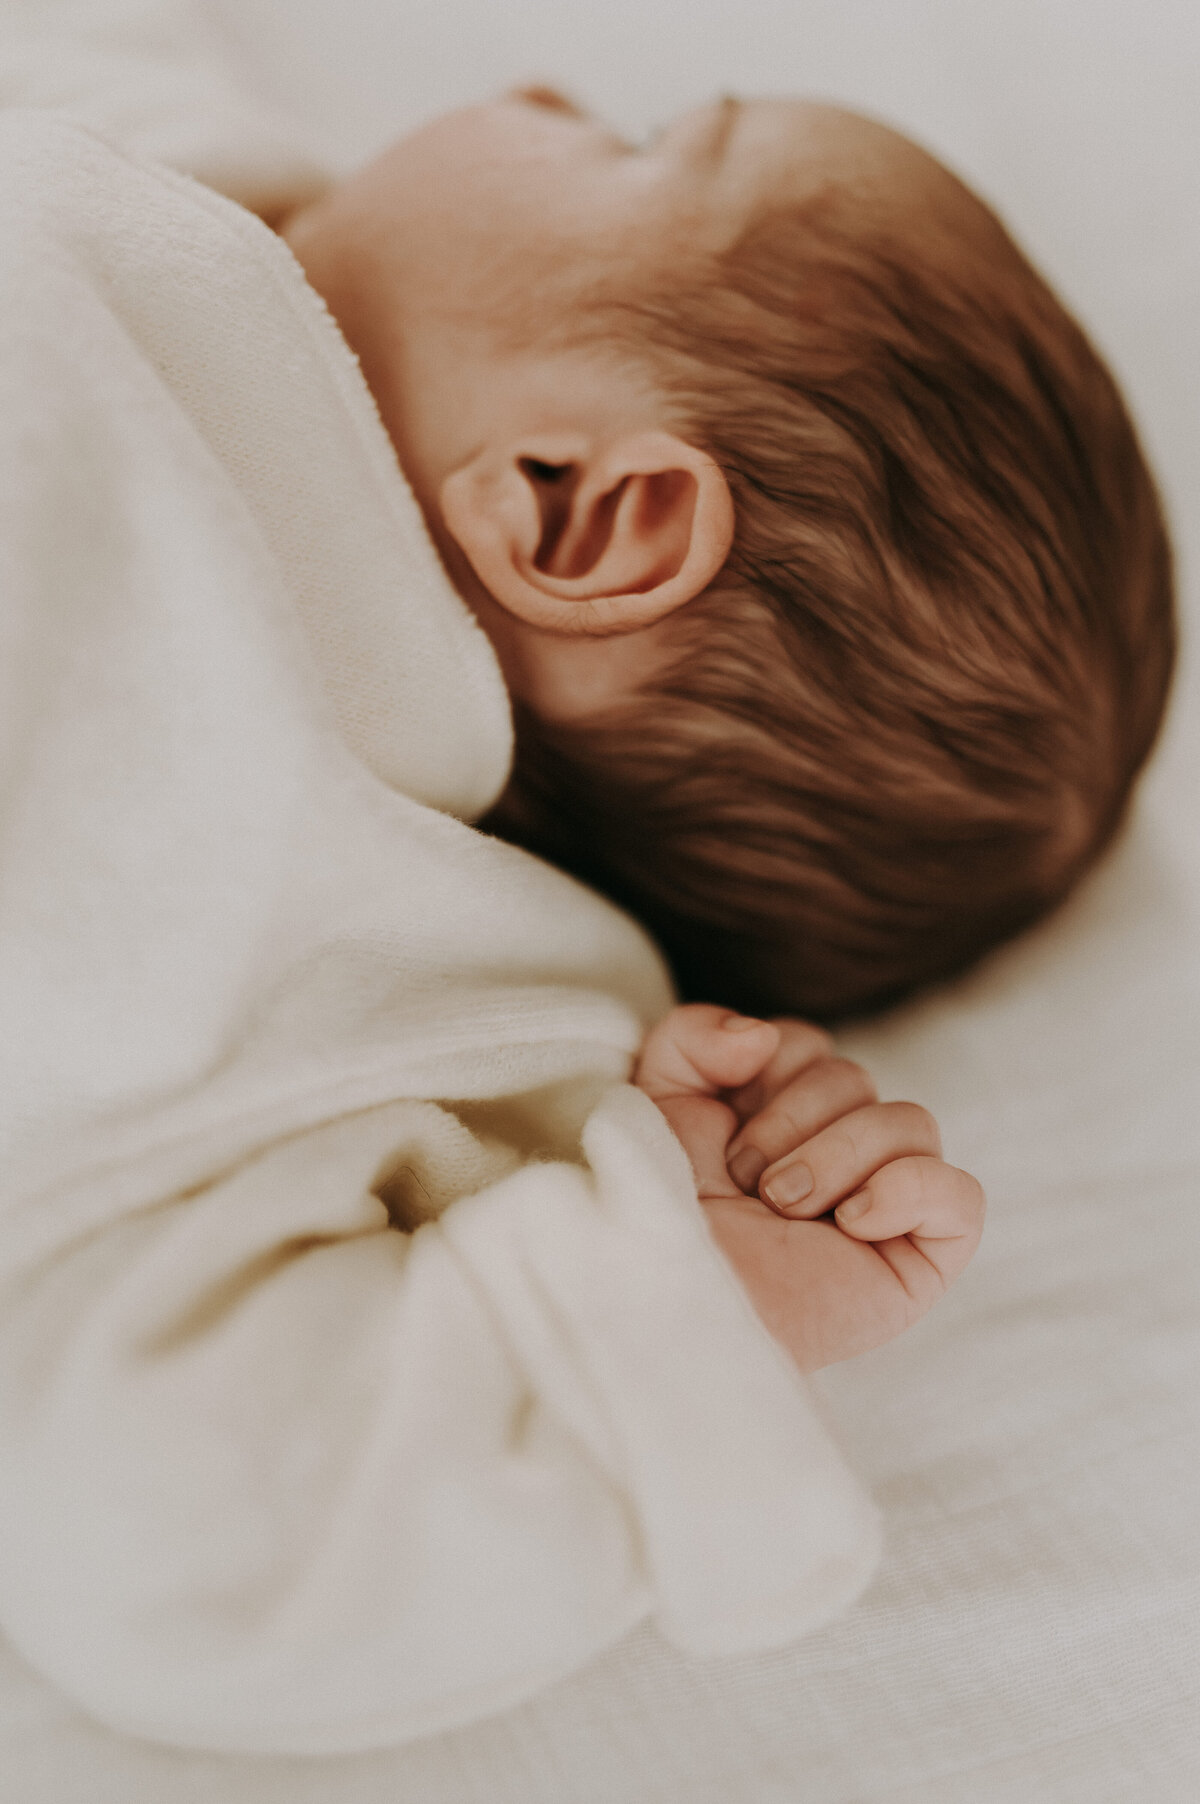 Close-upfoto van baby die ligt te slapen.